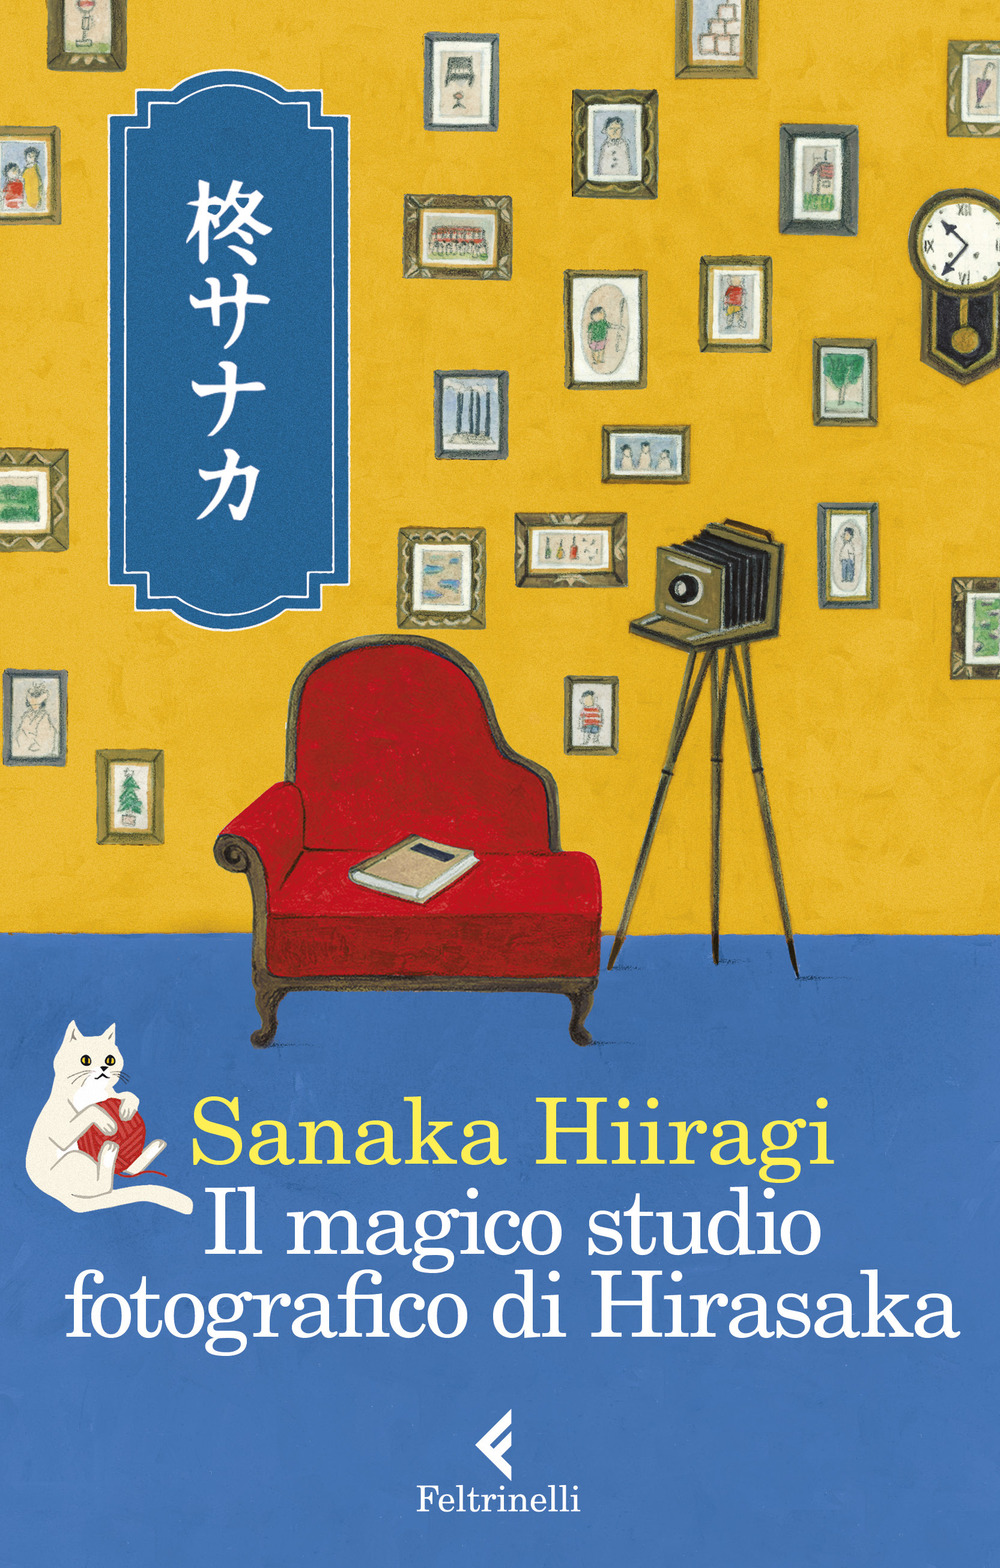 Il magico studio fotografico di Hirasaka In uscita il 29 agosto anche “Il magico studio fotografico di Hirasaka” della scrittrice giapponese Sanaka Hiiragi, un romanzo delicato e profondo che parla di vita e di morte. E la sua scrittura, la su apoetica è legata a doppio filo alla fotografia. Scopriamo perché. "Il magico studio fotografico di Hirasaka" sembra essere un romanzo intrigante e profondo, che esplora temi come la vita, la morte, l'amore, e la perdita. Il protagonista, il signor Hirasaka, gestisce uno studio fotografico speciale, dove i visitatori possono rivivere i loro ricordi più preziosi e scattare di nuovo le loro foto preferite. Ogni visitatore è accolto con attenzione e un rituale preciso. Lo studio sembra essere un luogo speciale, situato al confine tra questo mondo e l'aldilà, dove le persone possono avere dei flashback e ricordare la loro esistenza prima di andare oltre. Questa credenza è radicata nella tradizione giapponese, che vede luoghi di passaggio e un processo di ricordi prima della morte. Gli ospiti di Hirasaka ricevono degli scatoloni contenenti foto-ricordo di tutta la loro vita e possono scegliere una foto per ogni anno vissuto. Tuttavia, c'è una regola: non possono interagire con nessuno durante questo processo. La storia sembra essere ricca di emozioni e messaggi consolatori sulla bellezza della vita e sull'importanza di cogliere ogni attimo. Le scelte che i visitatori faranno e le vite che hanno vissuto possono essere affascinanti e coinvolgenti. Non è chiaro perché solo Hirasaka rimanga sempre nello studio, ma potrebbe essere una parte intrigante della trama che viene svelata durante il corso del romanzo. In definitiva, "Il magico studio fotografico di Hirasaka" sembra essere una storia magica e coinvolgente che abbraccia il fascino della tradizione giapponese e riflette sulla vita e sulla morte in modo delicato e profondo. La signora Hiiragi è una scrittrice pluripremiata che ama le macchine fotografiche e la fotografia. Scrive di macchine fotografiche e fotografia per una varietà di media e sui suoi siti di social media condivide molte istantanee che ha scattato con il GR! A febbraio, ha pubblicato il suo libro, "Tengoku kara no takkyubin (Consegna a domicilio dal cielo). Nel capitolo 4, c'è un episodio che parla di un club fotografico e di macchine fotografiche: “Era quando mixi (un sito di social media in Giappone) era in piena espansione.Quando stavo cercando di fare sul serio con la fotografia, ho scoperto che ogni macchina fotografica aveva la sua comunità e ho iniziato a sbirciare in varie stanze della macchina fotografica. Tra questi, ho trovato la stanza GR quella con il senso di distanza più confortevole e le foto più belle. Poi ho iniziato a fotografare con la GR Digital II come un diario, poi GR1, GRIII e GR IIIx. GR è sempre stato il mio buon partner. Porto con me il mio portafoglio, il mio telefono e il mio GR. Lo porto con me quando vado a fare jogging e in campeggio. Ho il mio GR nella mano destra non appena penso: "Oh, grandi nuvole di aeroplani!" Voglio che la mia macchina fotografica sia con me ogni volta che il mio cuore si muove anche solo un po', e penso che la GR sia perfetta per questo. La vita di tutti i giorni è così fragile che sfugge rapidamente ai tuoi ricordi. Che sia il colore di una foglia di banano, il riflesso dell'acqua o un paesaggio innevato, voglio catturarli uno per uno con il mio GR e conservarli come un tesoro”- Chi è Sanaka Hiiragi è una scrittrice, scrittrice, nata a Kagawa, cresciuta a Hyogo e vive a Tokyo. Nel 2013, ha debuttato come vincitrice segreta del "Premio KONOMYS". Una serie di racconti ambientati in un negozio di macchine fotografiche classiche di lunga data a Yanaka, e un romanzo giallo per macchine fotografiche, "Yanaka retoro kamera ten no nazo biyori (Giorni misteriosi allo Yanaka Retro Camera Shop" in tre volumi (Takarajima-sha), hanno portato alla sua scrittura per riviste di fotografia e macchine fotografiche. Ha anche scritto "Jinsei shashinkan no kiseki (Miracoli nello studio fotografico dopo la vita" (Takarajima-sha), una storia su uno studio fotografico speciale che scatta foto di lanterne in corsa. Il 17 febbraio, 2022, è stato pubblicato "Tengoku kara no takkyubin (Consegna a domicilio dal cielo)" (Futabasha).C'è un episodio su un club di fotografia e macchine fotografiche nel capitolo 4 del romanzo.Un romanzo giallo umoristico su tre ragazze in una scuola di fotografia e un l'uscita della fotocamera di grande formato è prevista per luglio Photo & Culture, Tokyo PCT “Sanaka Hiiragi no kamera numa (Le fotocamere senza via d'uscita di Hiiragi Sanaka)” viene pubblicato settimanalmente. La casa editrice regala l’incipit del libro e noi volentieri lo ripubblichiamo! “Benvenuta nel mio studio fotografico, signora Hatsue. Queste fotografie raccontano la sua vita: le è concesso di tornare indietro nel tempo e scattare di nuovo la sua foto preferita. Ma potrà farlo solo una volta e non potrà parlare con nessuno. È pronta?” Quella della signora con l’autobus Le lancette e il pendolo del vecchio orologio a colonna erano ferme. Hirasaka tese l’orecchio. Lo studio fotografico era così silenzioso che gli sembrò di sentire un ronzio. Le scarpe di pelle affondavano nel tappeto rosso un po’ rétro. Accarezzò le genziane disposte con cura sul bancone. Le ruotò leggermente. In fondo all’androne c’era una larga porta a due battenti, socchiusa, oltre la quale si intravedeva lo studio. Sotto una luce fioca era steso un fondale di carta davanti a cui era stata sistemata, su un lato, una lussuosa poltrona. Su un piedistallo, una grossa macchina fotografica a soffietto. Piedistallo e macchina fotografica erano di legno robusto, più grandi del normale; suscitavano puntualmente lo stupore dei clienti, che dicevano: “È incredibile, questa macchina: sembra un cofanetto di legno”. I più esperti invece commentavano: “Ah, che nostalgia. È una Anthony, vero?”, e da lì partivano lunghe conversazioni. Appena il tempo di chiedersi a chi appartenesse l’ombra obliqua fuori dalla finestra che sentì chiamare: “C’è una consegna! Una consegna per il signor Hirasaka”. E poi un toc-toc, toc-toc allegro. Hirasaka aprì pensando a quel tipo che ripeteva continuamente gli stessi gesti, eppure sembrava sempre divertirsi un mondo. Sulla soglia trovò il giovane fattorino in divisa. Portava il berretto con la visiera all’indietro, e come al solito spingeva un carrello portapacchi. Guardò la scatola posata sul carrello e ne sottolineò le dimensioni con un mezzo sorriso. All’altezza del petto, sulla divisa c’erano un gatto bianco stilizzato e il nome dell’addetto, Yama. Era calvo, e con un’abbronzatura che gli dava un aspetto gradevole. “La sua prossima visita sarà una graziosa signorina,” disse porgendogli la cartella delle ricevute. “Bugiardo,” ridacchiò Hirasaka mentre firmava. “Signor Hirasaka, non riuscirà mai a portare da solo un pacco così grande, non vuole che la aiuti? Consegne così voluminose non ne facevo da un pezzo. Le fotografie che ci sono qui dentro avranno cent’anni, secondo me.” I due sollevarono insieme la grossa scatola e la appoggiarono sul bancone. Era così pesante che si ritrovarono entrambi senza fiato. “Signor Hirasaka, cos’è, si è ravveduto? Non è che ha deciso di cambiare mestiere?” ridacchiò Yama. “Forse sì. Tra un po’, però.” “Figuriamoci,” ribatté Yama sistemandosi il berretto. “Bene, vado, mi aspetta un’altra consegna. Abbiamo ogni giorno il nostro bel da fare noi due, non è vero? Cerchiamo di non rimetterci le penne.” “Non penso proprio che ci sia questo rischio.” Yama fece un cenno con la mano e se ne tornò spingendo il carrello, la cartella delle ricevute sotto il braccio. Hirasaka allestì lo studio per la sua prossima cliente, la signora Yagi Hatsue. Pregava sempre di “vederli andar via” contenti, che le fotografie fossero di loro gradimento. E poi... Di riuscire a incontrare finalmente quel “qualcuno” che cercava da tempo. * * * “Signora Hatsue! Signora Yagi Hatsue!” chiamò una voce maschile. Sentendo il proprio nome, Hatsue si svegliò di colpo. Dove si trovava? Era distesa sul fianco, su un divano, qualcuno l’aveva addormentata. Sopra di lei, un soffitto sconosciuto e il volto preoccupato di un uomo che la scrutava. Provò a frugare tra i ricordi più recenti per cercare di capire se, per caso, fosse svenuta a causa del gran caldo degli ultimi giorni, ma si rese conto che la sua memoria era avvolta da una specie di bruma. Mi chiamo Hatsue, ho novantadue anni, sono nata nel quartiere di Toshima: bene, le mie rotelle sono ancora tutte a posto, o almeno credo. Osservò agitata il viso dell’uomo. Evidentemente si conoscevano, perché l’aveva chiamata per nome. Ma chi era...? Forse aveva trovato il suo nome tra i suoi effetti personali mentre era priva di sensi. Cercò di sollevarsi e intanto si sforzava di ricordare. Piano piano, si fece avanti con le spalle badando a non affaticare la schiena. Anche se era svenuta non si sentiva particolarmente acciaccata. Restava il problema di chi fosse quel tale. Fino ad allora, ogni volta che qualcuno per strada le aveva rivolto la parola era sempre riuscita a capire di chi si trattava, e allora diceva: “Sei Tizio, sei Caio...?”. E lo faceva contento. Con l’età la mente si arrugginisce, che disdetta. “Benvenuta. La aspettavo,” le disse l’uomo. Puntò l’indice verso sé stessa, come a chiedergli se parlasse proprio con lei, e lui fece sì con la testa. “Lei è la signora Hatsue, no?” “Be’, sì...” Osservò l’uomo dal basso. Portava una camicia grigia con il colletto inamidato. Aveva i modi pacati dei pastori o dei preti. I capelli ben pettinati. L’aria gentile ma non del tutto trasparente. Non era bello da far girare la testa ma nemmeno brutto, un tipo dall’aspetto piuttosto ordinario, che poteva assomigliare a chiunque e a nessuno. “Mi chiamo Hirasaka, e gestisco da molti anni questo studio fotografico,” si presentò. Hatsue si accorse di non avere più il bastone. Forse le era caduto quando aveva perso i sensi? Vedendo che si guardava intorno, Hirasaka pensò di doverle spiegare dove si trovava, e così le disse: “Quando si entra, sulla sinistra, c’è lo studio vero e proprio. Ma per le fotografie a volte usiamo anche il giardino interno. Sulla destra ci sono la sala d’attesa e il laboratorio. Glieli mostro”. Hatsue non cambiava mai: quando qualcosa le interessava, voleva sapere tutto. E adesso avrebbe voluto sapere perché il proprietario di quello studio fotografico la stesse aspettando. E che cosa potesse mai desiderare da lei. E soprattutto, come fosse arrivata fin lì. “Prego, mi segua,” le disse, e così lei, che in realtà avrebbe avuto una montagna di domande da fargli, si limitò ad alzarsi lentamente. Era da tanto tempo che non camminava senza aiutarsi con il bastone. Si appoggiò al divano, fece forza sulle braccia e alla fine riuscì a spostarsi. Stranamente si sentiva bene, non le faceva nemmeno male la schiena. Hatsue seguì piano piano Hirasaka. Lui le usò la cortesia di porgerle la mano. Nella sala d’attesa tutto era tranquillo. Il divano in pelle era logorato dall’uso, ma si vedeva che lo tenevano ben pulito, e anche il vecchio tavolo in legno faceva bella figura. Tutto trasmetteva una sensazione di attenzione e cura, non di sperpero da collezionisti, e Hatsue si disse che quel giovanotto sembrava avere davvero buon gusto. Nel giardino oltre la vetrata brillavano tante piccole luci e guardando meglio notò che erano lanterne in pietra ricoperte di muschio, e poi c’erano ciliegi dai rami penduli e tsuwabuki che, se usate come sfondo per fotografie in kimono, ne avrebbero fatto risaltare le fogge e i colori. In un angolo della stanza c’era una vetrina con una collezione di bollitori elettrici, bicchieri con il sifone per preparare il caffè e tazzine. Fu colpita dall’assenza di polvere – Hirasaka, pensò, doveva essere un amante della pulizia. Poi, notò una grossa scatola sul tavolo. “Le preparo un tè,” disse Hirasaka dandole le spalle, e cominciò a disporre tazze e teiera con mano sicura. Hatsue si fece coraggio e lo chiamò: “Mi scusi”. Hirasaka si voltò. “Scusi se ciò che sto per chiederle potrà sembrarle strano.” “Dica,” la esortò a continuare. “Ecco... Per caso io... sono morta?” Hirasaka sgranò leggermente gli occhi. “...Sì, giusto poco fa. Normalmente avrei dovuto dirglielo io, ma capita che qualcuno se ne renda conto da solo, anche se è raro.” Le rispose in modo così naturale che Hatsue non capiva se dovesse sentirsi sollevata, divertita o compiaciuta per la propria perspicacia. Il tè era perfettamente equilibrato, né troppo forte né troppo leggero. Lei aveva sempre pensato che i morti avessero un aspetto ben definito. Un panno sulla testa o il corpo semitrasparente. E invece sentiva ancora i piedi saldi per terra. Così come la consistenza della tazza e il sapore del tè. Andò a sedersi mentre Hirasaka la seguiva con lo sguardo. Si mise a riflettere. “Però, vede, avevo sempre pensato che ad accogliermi nell’altro mondo avrei trovato mia madre, mio padre o mio marito.” E invece aveva trovato quell’uomo a lei sconosciuto di nome Hirasaka. Sul suo volto doveva essere comparsa un’ombra di delusione, perché lui le disse: “Ma no, questo è ancora un luogo di passaggio”. Hatsue rifletté ancora e poi replicò: “Senta, ma per caso il suo nome è ispirato al luogo chiamato Yomotsuhirasaka, nel Kojiki? Il pendio da cui si accede al mondo dei morti, dove Izanagi si reca alla ricerca di Izanami?”. Hirasaka sembrava stupito dalla domanda. Era vero che Yomotsuhirasaka era il nome del pendio che collegava il mondo dei vivi a quello dei morti. “Sa tante cose.” Hatsue aveva sempre amato leggere ed era curiosissima, queste nozioni di cultura generale erano il suo forte. Qualche volta si vantava di non essere ancora del tutto arrugginita. “È proprio così. In buona sostanza, questo posto è al confine tra la vita e la morte.” “E ad aspettarmi ho trovato lei.” “Già. Proprio nel mezzo.” “Quindi, non sono ancora finita all’altro mondo.” “No.” “E mi dica, signor Hirasaka, lei ha a che fare con il re degli Inferi, per caso? Con qualche divinità? Buddha, forse? Certo, però, che...” Hirasaka era così calmo e sorridente che stava quasi per sfuggirle il seguito. (Certo, però, che a guardarla non si direbbe!) Il modo in cui beveva il tè era in tutto e per tutto umano. “Sono solo una guida. Faccio il possibile per evitare traumi alle persone, perché sentendosi dire di punto in bianco ‘Sei morto’ uno potrebbe mettersi a piangere, deprimersi o strepitare, ed è successo tante volte, mi creda. Quindi, lo studio fotografico funziona un po’ come un ultimo collegamento con la realtà.” Hatsue si guardò intorno. In effetti sembrava un normalissimo studio fotografico. Certo, se si fosse trovata improvvisamente davanti al re degli Inferi si sarebbe messa a tremare e non avrebbe più detto una parola. “Ecco perché in questo momento lei indossa i suoi soliti vestiti, signora Hatsue. È importante che il suo aspetto esteriore rifletta il modo di essere a lei più familiare.” “Che bello, il mio ginocchio è guarito,” disse lei muovendo avanti e indietro la gamba destra, e Hirasaka annuì. “Se mentre è qui si mette a correre, suderà e avrà il fiato corto. Proprio come quand’era in vita, capisce?” Hatsue chiuse e riaprì le mani. Era vero, era tutto uguale a quando era viva. Non riusciva a credere che quello non fosse più il suo vero corpo. “E quindi dovrò spostarmi da qui? Andare nel cosiddetto ‘aldilà’?” Se proprio doveva andare, pazienza, ma voleva sapere cosa l’aspettava. La agitava non riuscire a immaginare quello che le sarebbe capitato di lì a poco. “Esatto. Prima, però, vorrei che facesse qualcosa per me.” E così dicendo cominciò a frugare nella grande scatola appoggiata sul tavolo. Ne estrasse alcuni involti di quelli che sembravano documenti. Ogni involto era chiuso da un foglio di carta bianco. Li tirò fuori uno dopo l’altro, tanti che non riusciva a tenerli con una mano sola. “Cosa sono quelli? Per caso avrebbe un paio di occhiali? Senza, non riuscirei a leggere niente.” “Riuscirà a leggerli benissimo, mi creda. Provi a concentrarsi solo sulla vista.” Così fece, guardò quei fogli che aveva tra le mani, concentrata, e si rese conto di poter mettere a fuoco come mai prima di allora. Era da tempo che non riusciva a distinguere tanti dettagli a occhio nudo. “Oh...” esclamò Hatsue vedendo cosa aveva in mano. Fotografie. Una quantità enorme. Non sapeva nemmeno chi potesse averle scattate, raffiguravano una piazza nelle vicinanze della casa in cui abitava da bambina, il padre e la madre da giovani e tante altre scene. Erano fotografie di formato leggermente più grande del solito, e facevano un bellissimo effetto. “Queste fotografie raccontano la sua vita, signora Hatsue. Una per ogni giorno, trecentosessantacinque per ogni anno. Di anni lei ne ha novantadue, quindi il totale è un numero impressionante...” Hatsue le sfogliò una a una. E puntualmente le ricordavano qualcosa che aveva dimenticato. L’occhialino che andava a posarsi su un ramo dell’albero di cachi vicino al cancello della loro casa. Le fessure sulla vecchia cassetta del latte. Le strisce di luce che filtravano attraverso lo scorrevole intagliato all’ingresso. “Ha tutto il tempo, le guardi pure con calma. Vorrei che tra queste scegliesse una fotografia per ogni anno, novantadue in tutto. Ha piena libertà, scelga quelle che le piacciono di più.” “Scegliere?” Era perplessa. Hirasaka aprì la porta sulla destra, quella che dava sul laboratorio, dove si vedeva uno strano telaio in legno. Nel mezzo aveva una specie di piatto destinato a contenere chissà cosa, e il piatto era sostenuto da quattro colonnine. Anche il piedistallo pareva robusto. E poi c’erano delle asticelle simili ai bastoncini di bambù dei diffusori, e delle specie di girandole. Era tutto di legno bianco, grezzo, come se quegli oggetti dovessero ancora essere terminati. “Lei sceglierà le fotografie e io le userò per la lanterna girevole.” Hatsue raggelò. “Cosa? Intende la lanterna girevole che si vede quando si sta per andare all’altro mondo?” “Esatto, proprio quella.” “E quindi siamo noi a scegliere le nostre fotografie?” Hirasaka appoggiò una mano sul telaio in legno. “Sì, ciascuno può scegliere le fotografie che preferisce.” “Dunque, ognuno sceglie le foto per la propria lanterna girevole...” ripeté, ancora incredula, Hatsue. “Con novantadue anni a disposizione, può venir fuori una lanterna coi fiocchi. Non vedo l’ora di mostrargliela.” Hatsue aveva sentito dire che la lanterna girevole appare quando si è in punto di morte, ma non immaginava che avrebbe avuto l’occasione di comporla lei stessa. “In effetti, ho saputo di persone che stavano per morire e hanno visto la lanterna.” “Sì, certo, anche se il numero di quelli che arrivano fin qui e poi riescono a tornare indietro rappresenta una percentuale minima rispetto al totale. Credo però che tutti dimentichino di essere stati in questo studio e di aver scelto le proprie fotografie. Rimane solo un vago ricordo della lanterna girevole. Guardi questa stanza.” Hirasaka uscì dalla sala d’attesa e aprì la porta dirimpetto. Proprio al centro di una stanza bianchissima c’era una chaise-longue dall’aria molto confortevole. La stanza perfettamente quadrata era tutta bianca, compresi pavimento e chaise-longue, e sembrava una specie di installazione artistica. Sul lato destro c’era una porta che con ogni probabilità conduceva all’esterno. “In quella stanzetta l’opera giungerà a compimento, con l’accensione della lanterna girevole. Lo spettacolo sarà riservato unicamente a lei, signora Hatsue. Se lo vorrà, però, potrà consentire anche a me che l’avrò composta di assistere insieme a lei.” Una lanterna girevole. Si accende la luce e comincia a ruotare. Le immagini del passato, impresse su carta di riso, diventano motivi floreali attraversati da bagliori rossi e gialli, e girano e girano: così se la ricordava. “E quindi il trapasso non è questione di pochi istanti, come guadare un fiume.” “Lo definirei la cerimonia finale della nostra esistenza, quella che ci consente di guardarci indietro un’ultima volta.” Già che c’era, decise di fargli la domanda a cui pensava da tempo. “E se questo è un luogo di passaggio, che ne sarà di me d’ora in avanti?” Hirasaka abbassò gli occhi, poi la guardò. Sembrava non trovasse le parole. “Deve scusarmi. Di ciò che viene dopo, io stesso so qualcosa solo per sentito dire. Non ne ho esperienza diretta. Tutti coloro che hanno proseguito non sono mai tornati indietro.” Il pensiero di cosa avrebbe trovato dall’altra parte la agitava. Forse si sarebbe semplicemente spenta, estinta. “Ho sentito che gli spiriti che sono riusciti a completare il ciclo di morte e rinascita si reincarnano in un’altra forma e vivono una nuova vita.” Hirasaka ritornò nella sala d’attesa e versò dell’altro tè. Lui e Hatsue portarono la tazza alle labbra nello stesso momento. Sorseggiando il suo tè, Hatsue si mise a ragionare. A un certo punto quella sensazione di calore sulla lingua sarebbe svanita, avrebbe dimenticato ogni cosa... E magari morire significava proprio perdere contezza di tutto questo. Hirasaka, accortosi forse da una qualche ombra sul suo viso che Hatsue era turbata, le rivolse la parola come per distrarla. “Penso che quando si troverà dall’altra parte lei non scomparirà del tutto, signora Hatsue. L’anima conserva i ricordi dormienti di tutti coloro che ci hanno preceduto, questo lo so per certo.” E si interruppe alla ricerca di un esempio, borbottò qualcosa, poi riprese: “Le è mai capitato di incontrare qualcuno per la prima volta e avere la sensazione di conoscerlo già, o che un luogo mai visitato prima le sia per qualche motivo familiare?”. “Sì, certo,” rispose Hatsue. “Per esempio, anche qui mi sembra di esserci già stata.” Hirasaka sorrise e ribatté: “Ecco, forse è la sua anima che ricorda. Però, vede, se la nostra vita è troppo piena di rimpianti e di rimorsi, se siamo troppo attaccati alle cose, allora il nostro cammino verso l’altro mondo diventa molto più difficile. E se non riusciamo ad arrivarci, la nostra anima resta intrappolata nello stesso posto per l’eternità”. Hatsue fece sì con la testa. “Dunque, signor Hirasaka, ricapitolando: adesso devo scegliere delle fotografie in numero pari a quello dei miei anni e comporre la lanterna girevole insieme a lei, giusto? Poi la guarderò ruotare, troverò la pace e completerò il mio ciclo.” Aveva ancora del lavoro da fare, quindi. Anche da morta, gli impegni c’erano sempre. “Una volta arrivati qui, poco conta che uno sia stato un grand’uomo o un miliardario: con noi possiamo portare solo i ricordi.” Hatsue osservò la montagna di fotografie che torreggiava su di lei. Quanto ci avrebbe messo a guardarle tutte? “Nell’epoca dei computer e degli smartphone, le lanterne girevoli si costruiscono ancora a mano... Chi l’avrebbe mai detto?” Le sembrava un po’ strano che, dopo la morte, le si chiedesse di scegliere non degli oggetti o dei video, bensì delle fotografie. Hirasaka ne prese una dalla montagna che aveva davanti. “Facciamo una prova usando questa fotografia che ha a che fare con lei, signora Hatsue. Si ricorda dove è stata scattata?” Gliela passò. Raffigurava una strada in discesa. “Ah...” Se lo ricordava. Si vedeva, a perdita d’occhio, un campo attraversato da quella strada in discesa. Un vento sibilante increspava un mare di spighe... Corse fino in fondo alla strada e sentì il sudore sulle tempie. L’odore secco del vento, sapore di sale sulle labbra. Davanti a sé, in lontananza, vide levarsi in volo, forse sorpreso, un airone. Si allontanò nel cielo azzurro fino a diventare un puntino bianco. Lo guardò finché non lo vide più, il vento le sollevò un lembo del kimono e il sibilo si trasformò in fragore. Se lo ricordava. Era ancora bambina, e l’estate sembrava destinata a durare per sempre. Il suo corpo era ancora forte, avrebbe potuto correre all’infinito su e giù per quella strada. “Si è ricordata?” “Sì, è la strada che passava tra i campi, la facevamo per andare nella città vicino alla nostra. Mi piaceva moltissimo.” Nel momento stesso in cui si trovò la fotografia tra le mani fu assalita dai ricordi e dalle emozioni. “E se la ricordava anche prima?” “No, l’avevo completamente dimenticata. Rimossa. Laggiù ormai hanno costruito dappertutto, è diventata una zona residenziale.” Hirasaka riprese la fotografia e la guardò. “È una veduta meravigliosa.” “Un paesaggio che non esiste più da nessuna parte, però.” Hirasaka gliela restituì. “Guardando questa fotografia mi sono tornate in mente tante cose. Tanti ricordi di quel periodo.” Hatsue osservava attentamente l’immagine. Si accorse che era composta da una miriade di piccoli grani, mille puntini colorati. Era solo una combinazione di colori, e invece i quattro lati di quel rettangolo racchiudevano tutti i suoni, il vento, gli stati d’animo e l’atmosfera del momento in cui la fotografia era stata scattata. Tutto nascosto da qualche parte dietro ai puntini colorati. “È proprio vero che le fotografie hanno una loro forza,” disse calmo Hirasaka. Hatsue continuava a guardarla. Era un’immagine senza alcuna ambizione artistica, niente di più che una semplice strada di campagna. Ma anche un paesaggio ormai perduto, che non esisteva più in nessun altro luogo. Una fotografia di poco conto, che tuttavia per Hatsue era qualcosa di estremamente prezioso. Hirasaka la invitò a sedersi per selezionare le fotografie. Lei le prese dagli involti, una per una, e cominciò a disporle davanti a sé. Ma ogni fotografia assorbiva a tal punto la sua attenzione che faticava ad andare avanti. A mano a mano che le sfogliava, si accorgeva di aver dimenticato tante cose. E di non ricordarsi nemmeno di averle dimenticate – per quanto ovvia le apparisse quest’affermazione. C’erano episodi che aveva rimosso, cose del cui aspetto non aveva più memoria, ma che le tornavano in mente quando le rivedeva. Nel mentre, Hirasaka si teneva abbastanza lontano da non darle fastidio, ma anche abbastanza vicino da trovarsi pronto nell’eventualità in cui avesse avuto qualche domanda da fargli. Aprì la porta del laboratorio e cominciò ad allestire il telaio della lanterna. Si preannunciava di dimensioni notevoli, difficilmente un uomo solo avrebbe potuto trasportarla; d’altronde, avrebbe contenuto novantadue fotografie. Novantadue fotografie erano una bella sfida. Già guardarle e sceglierle era piuttosto faticoso, e per dirla tutta Hatsue non era tanto sicura di riuscire a passare in rassegna ogni singolo involto contenuto nella scatola. Quando era arrivata suppergiù all’equivalente di sette anni, Hirasaka si avvicinò.